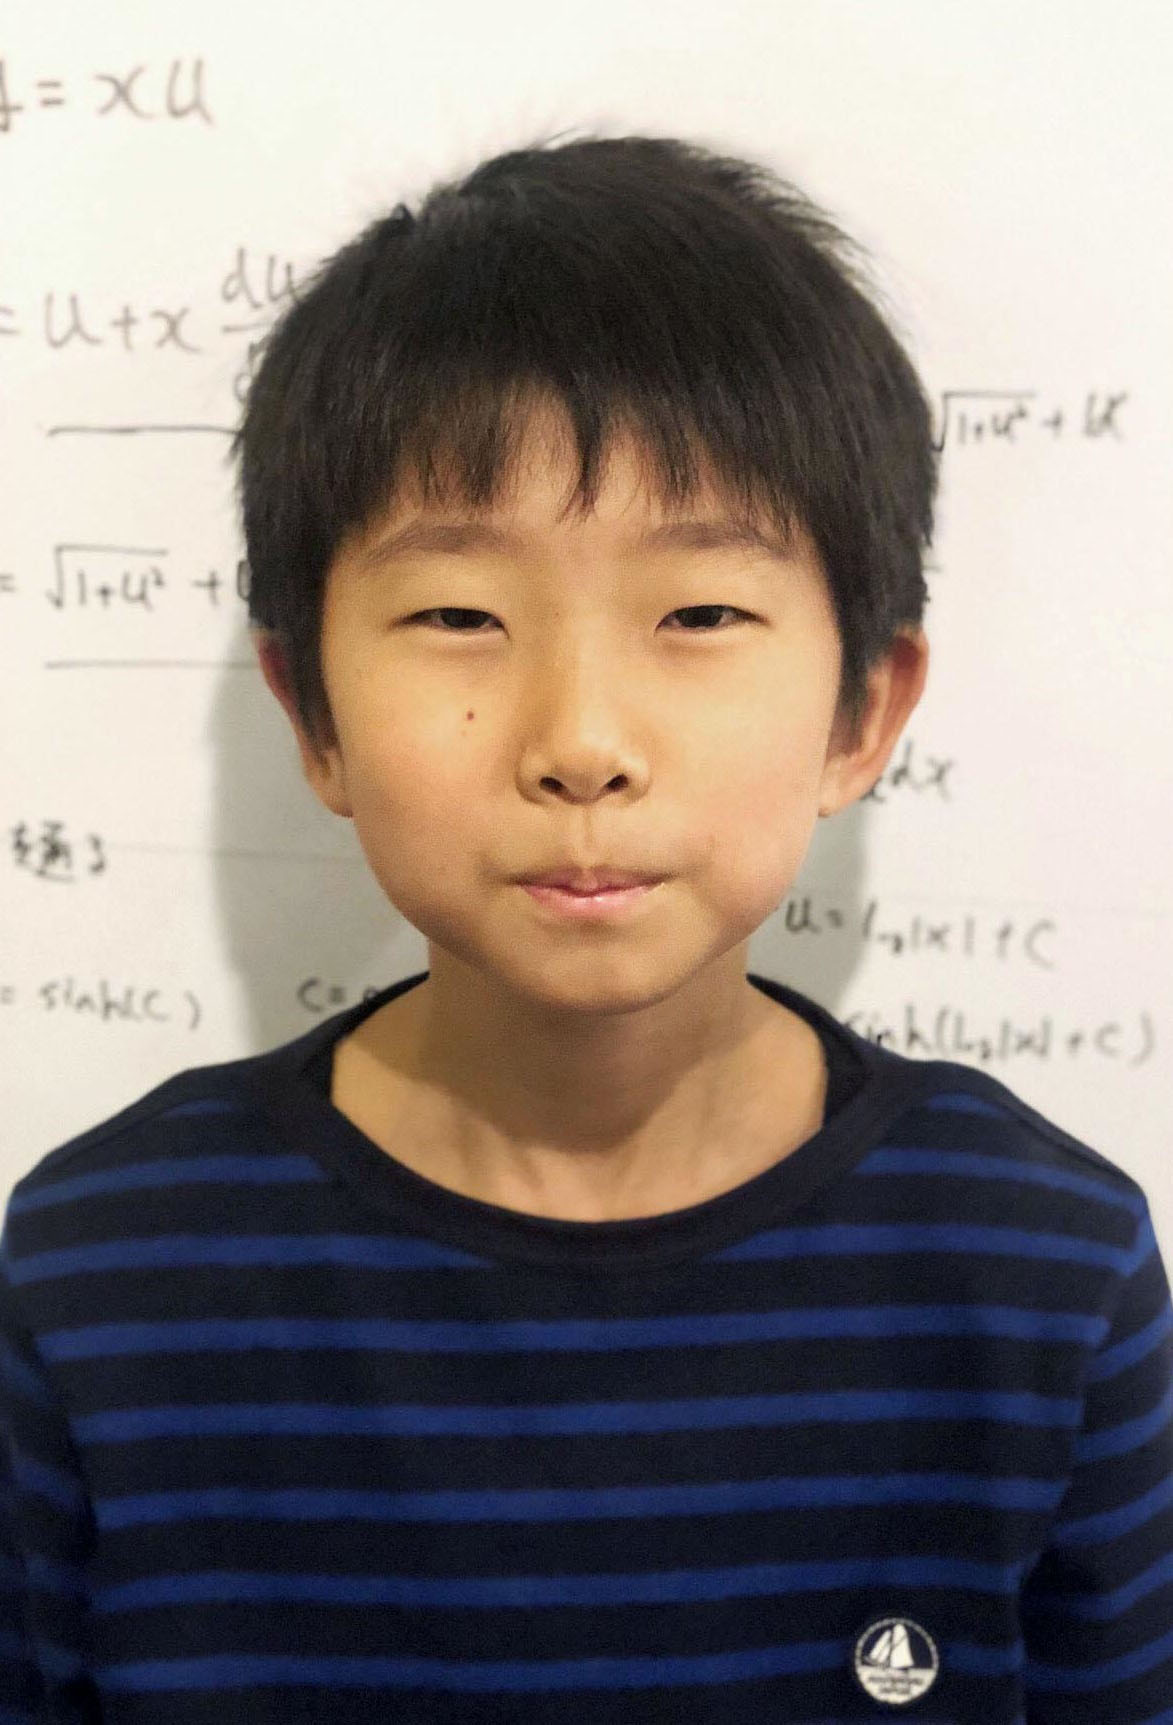 طفل ياباني يصبح عالما في الرياضيات!